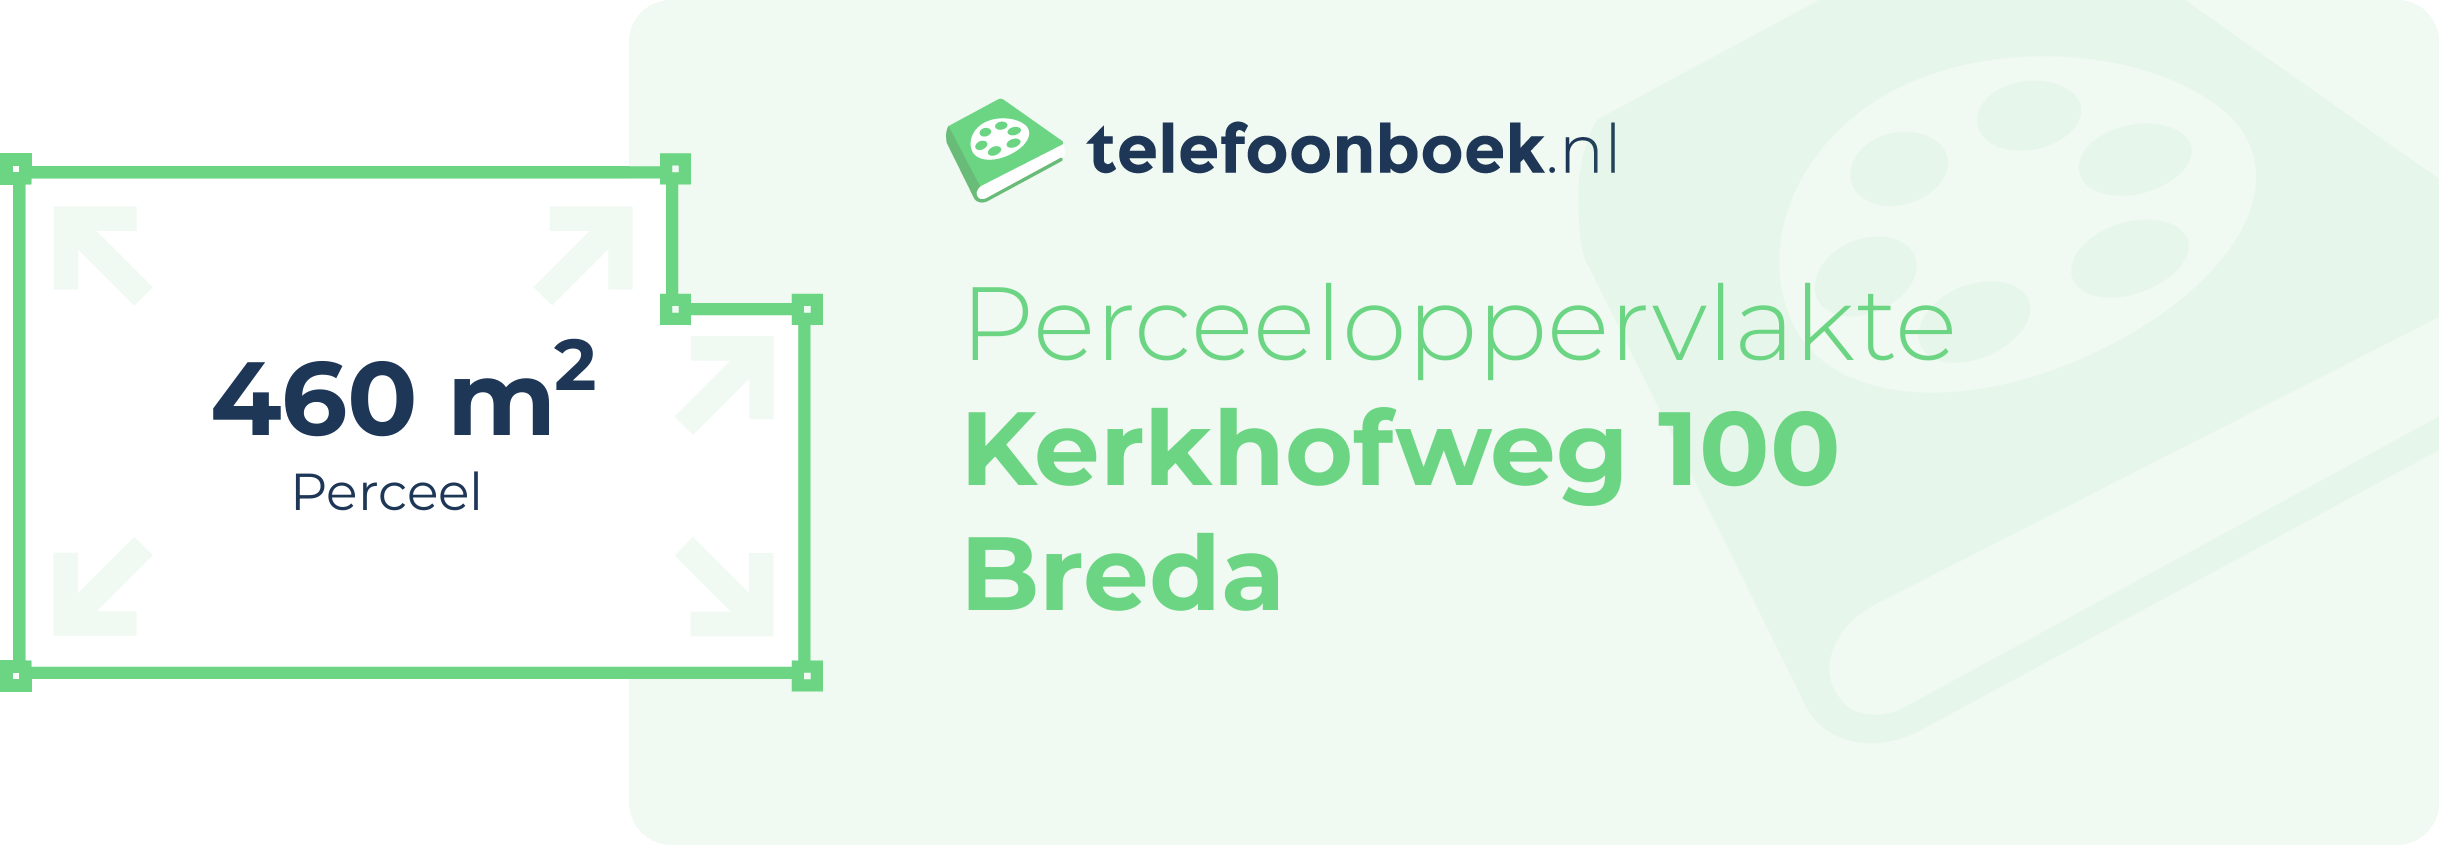 Perceeloppervlakte Kerkhofweg 100 Breda